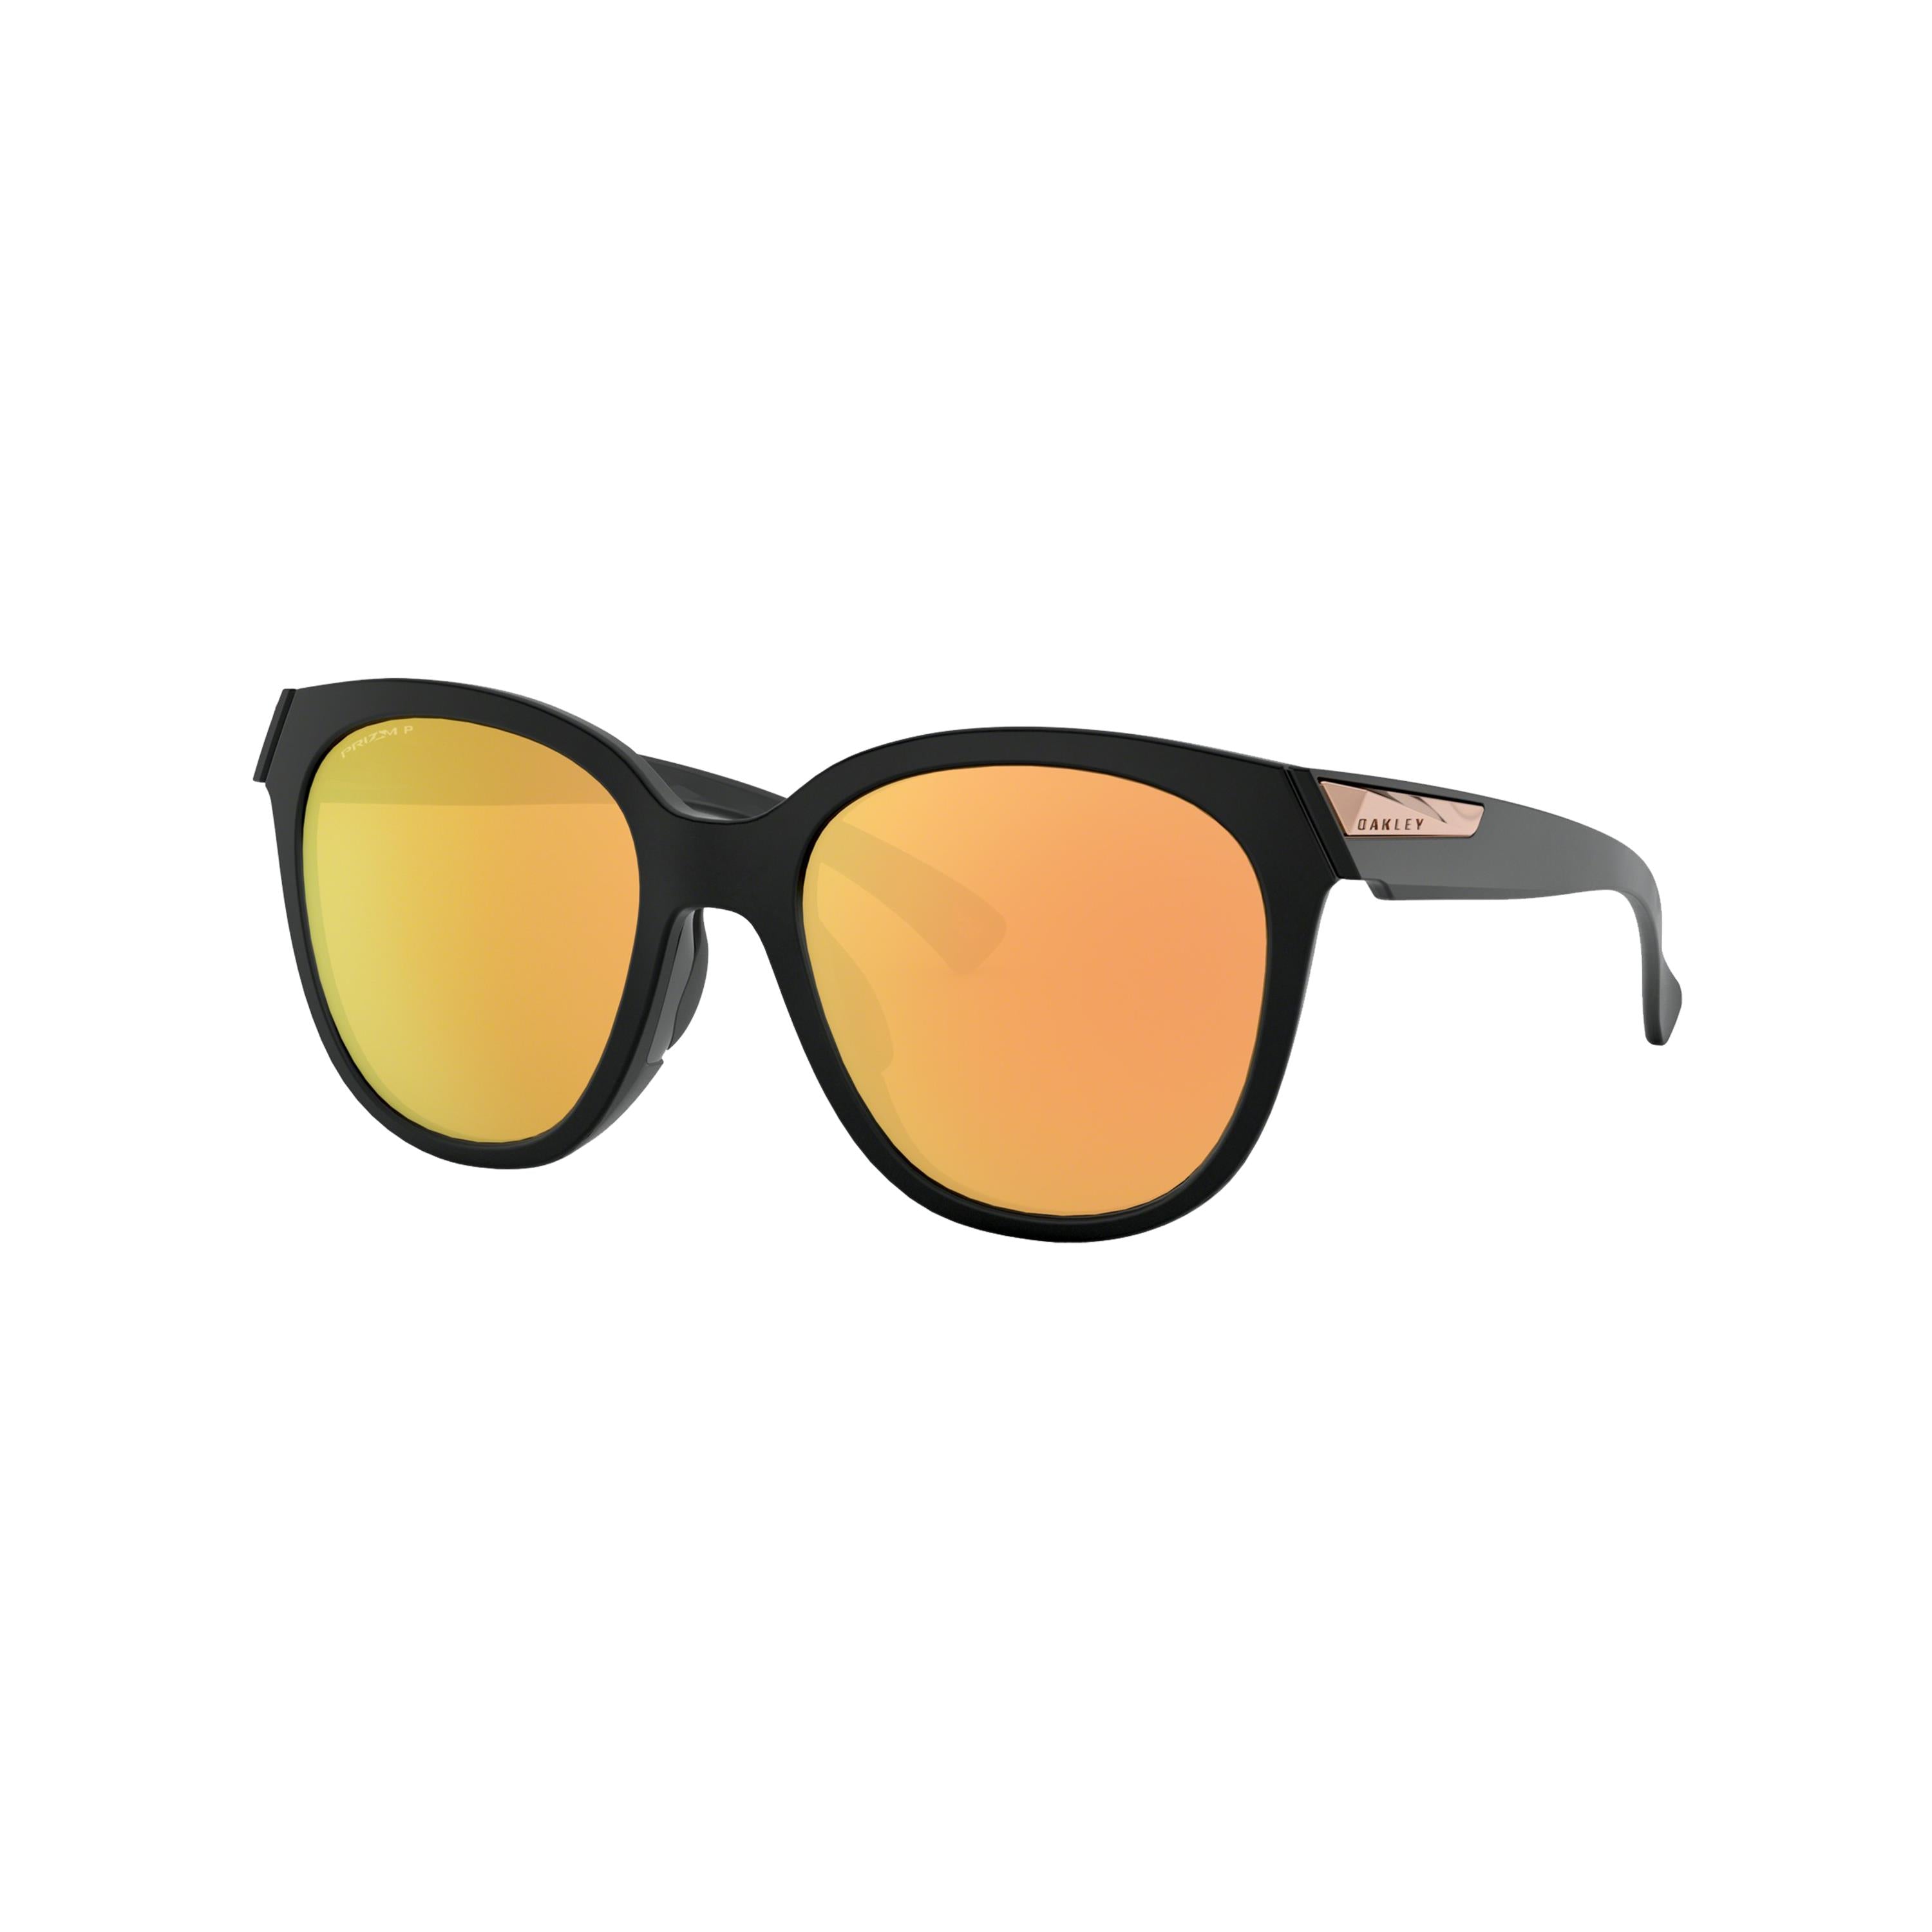 Oakley Women's Polarized Low Key Sunglasses